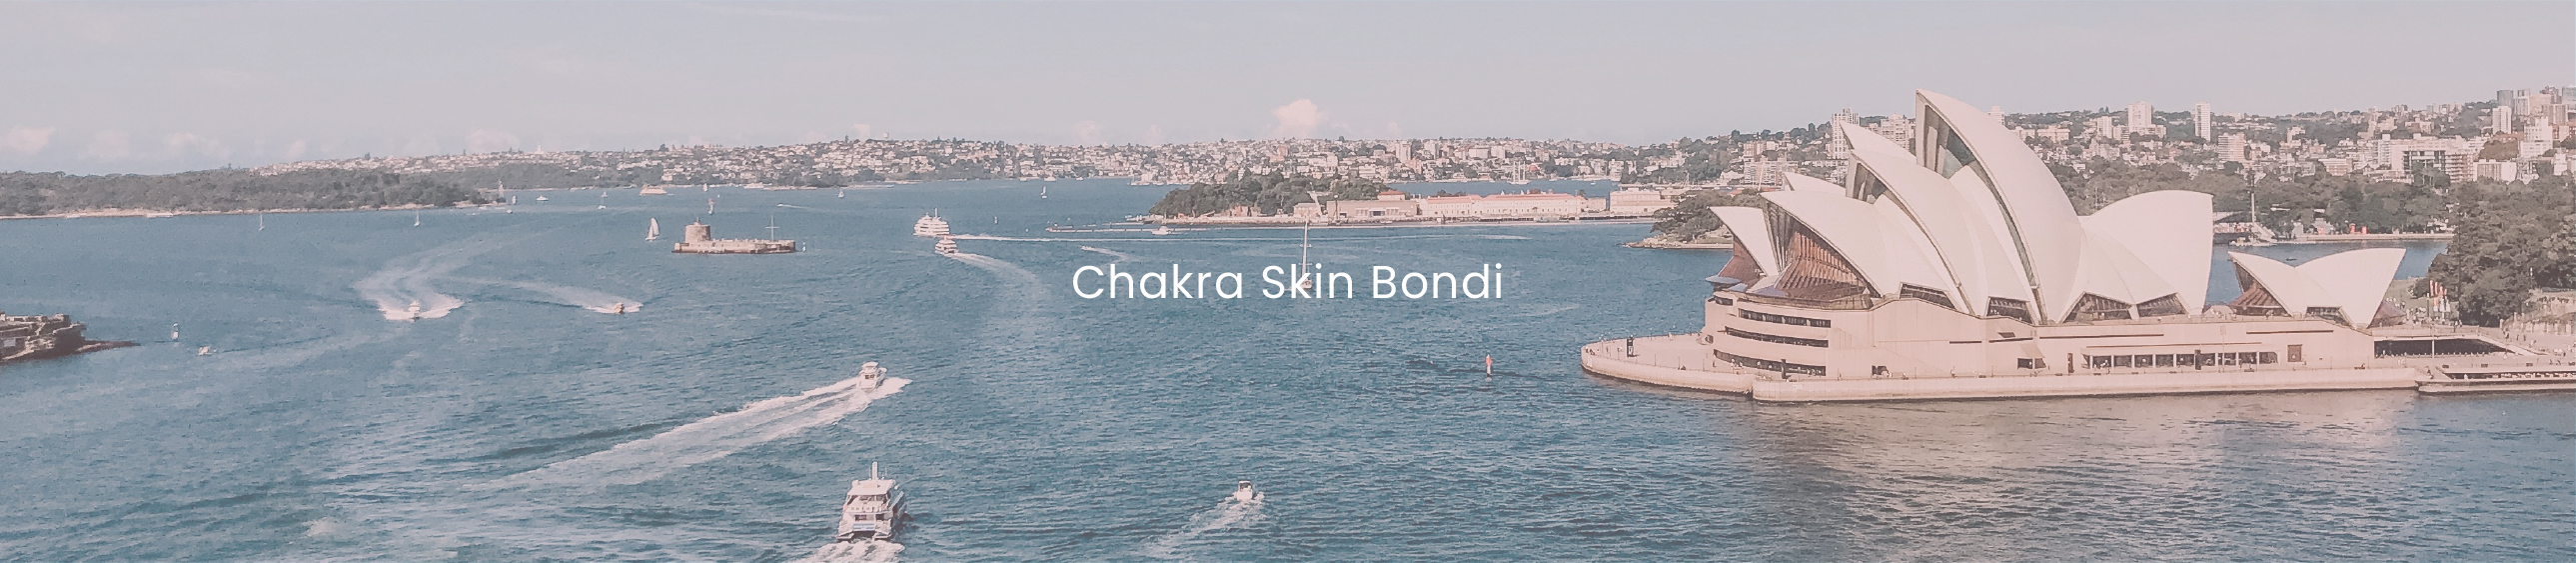 Chakra Skin Bondi